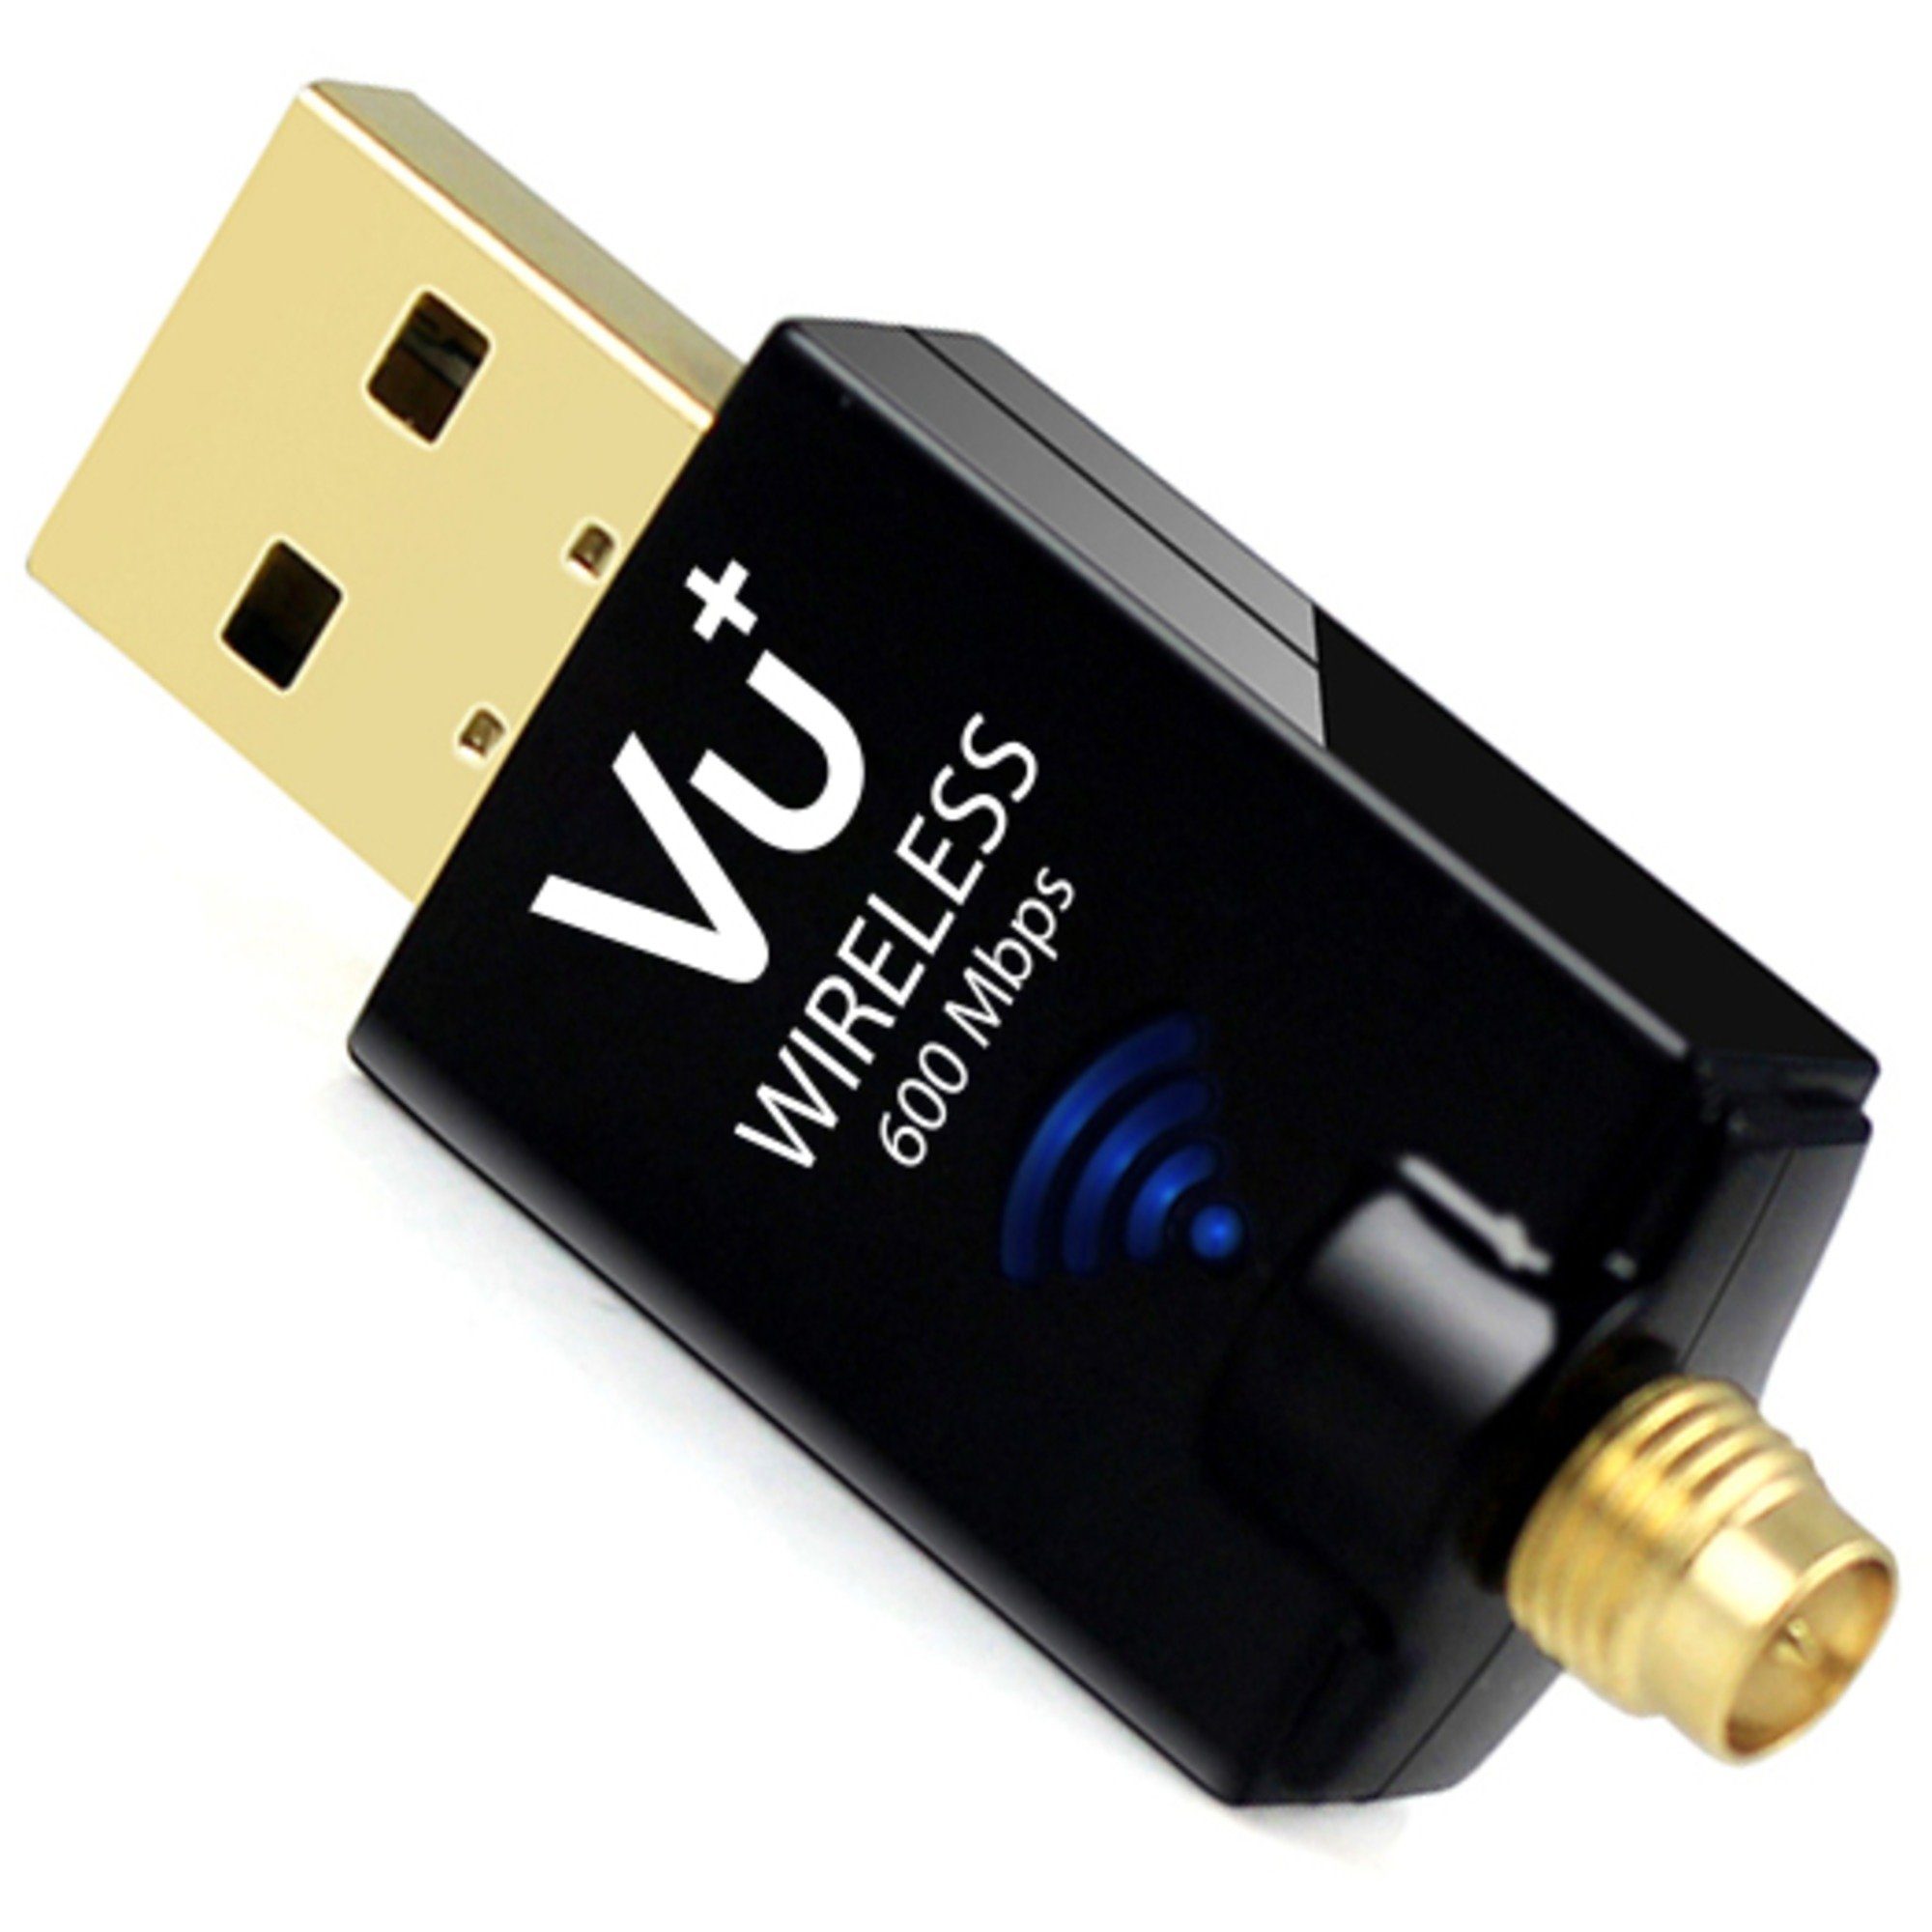 600 VU+ Netzwerk-Adapter VU+ Wireless Mbps WLAN-Adapter Adapter, USB